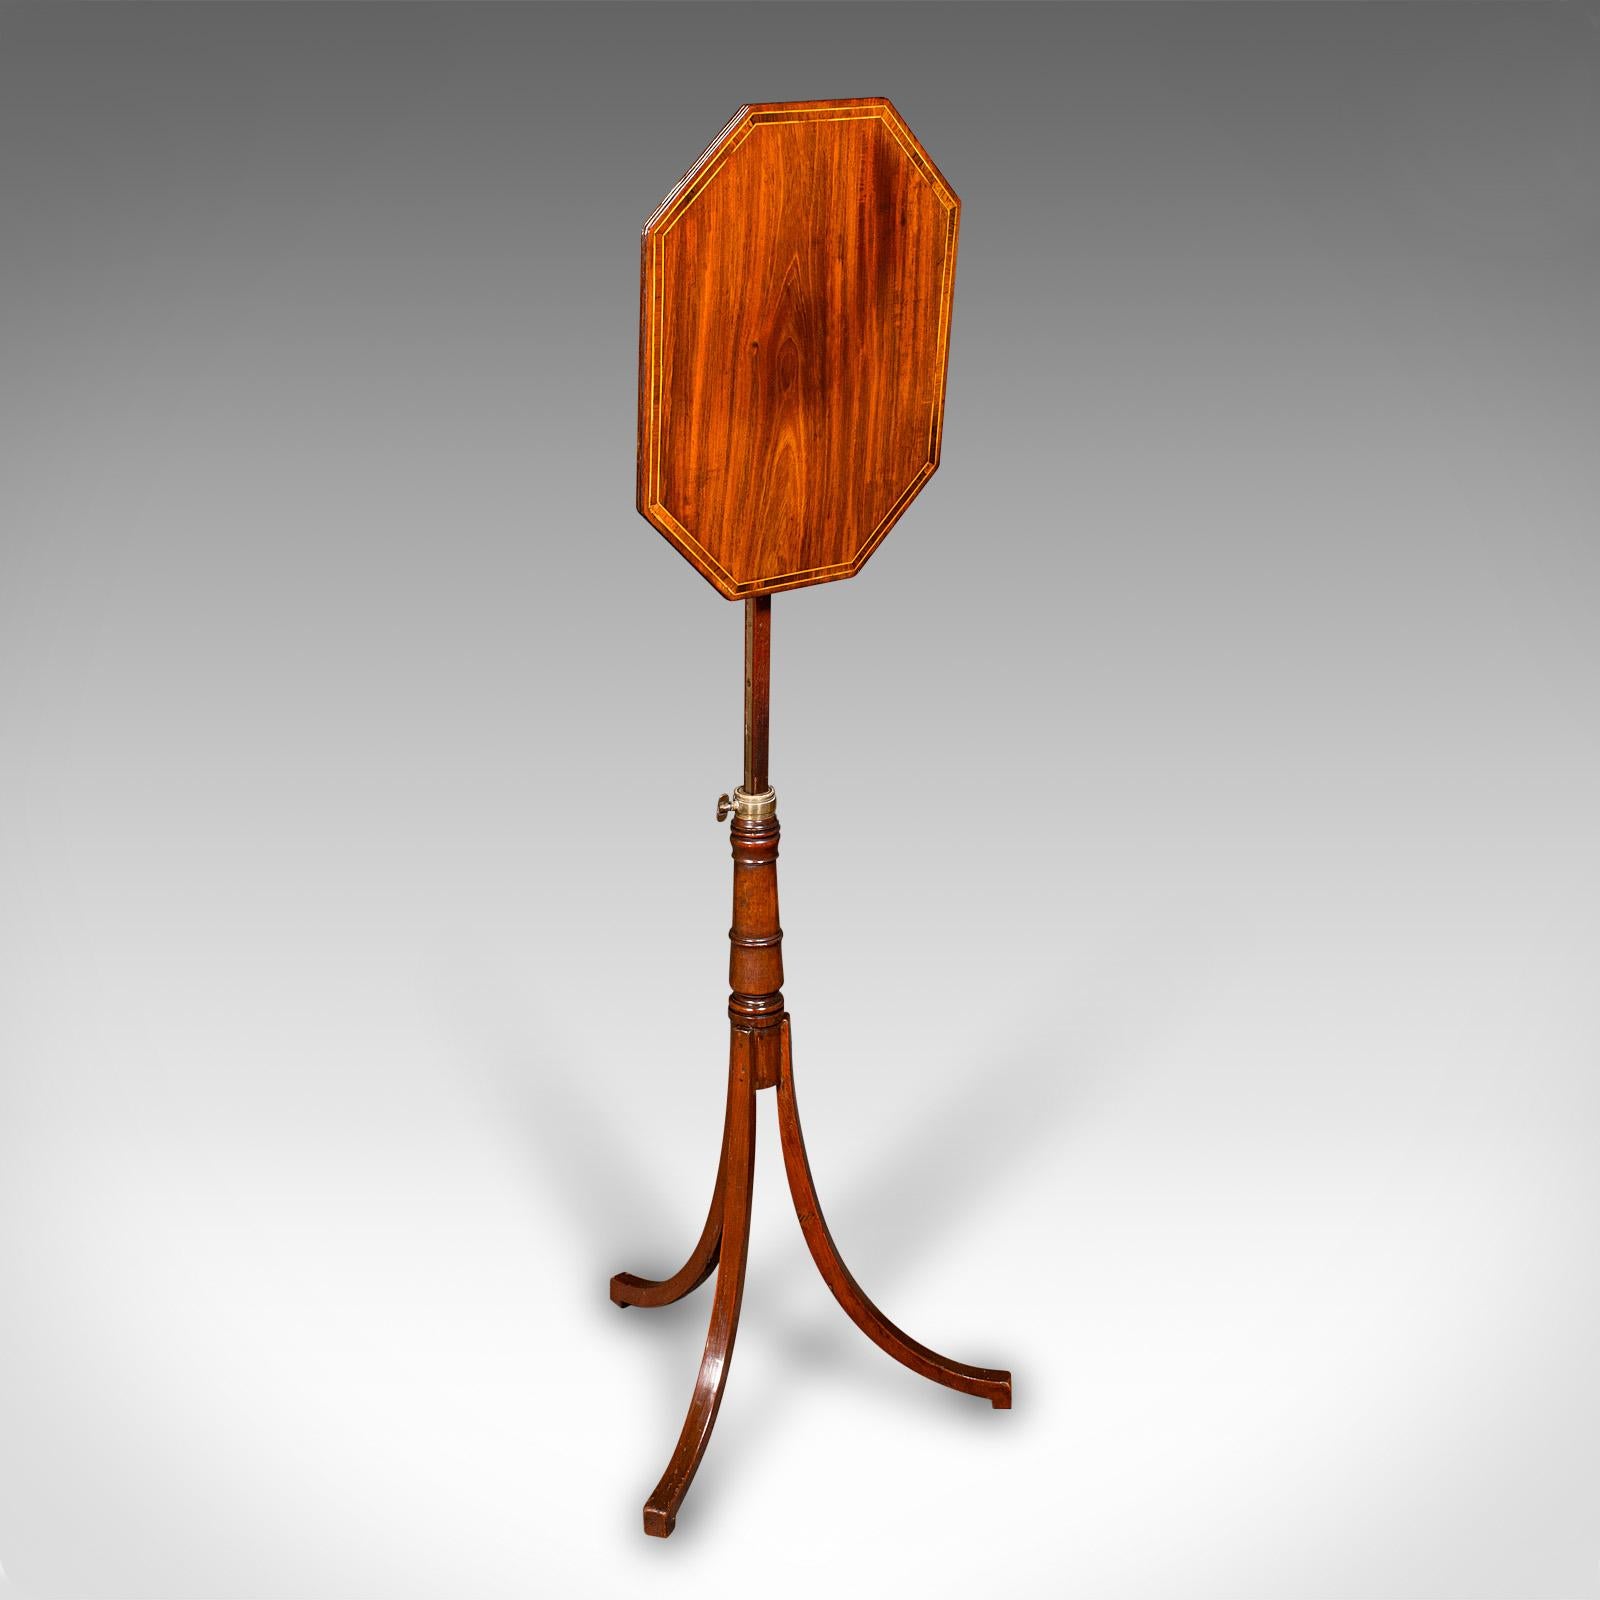 Il s'agit d'une ancienne table à vin métamorphique. Table d'appoint ou lampe en acajou anglais, datant de la période Regency, vers 1820.

Elegante table métamorphique avec une superbe figuration et couleur.
Présente une patine d'usage désirable et